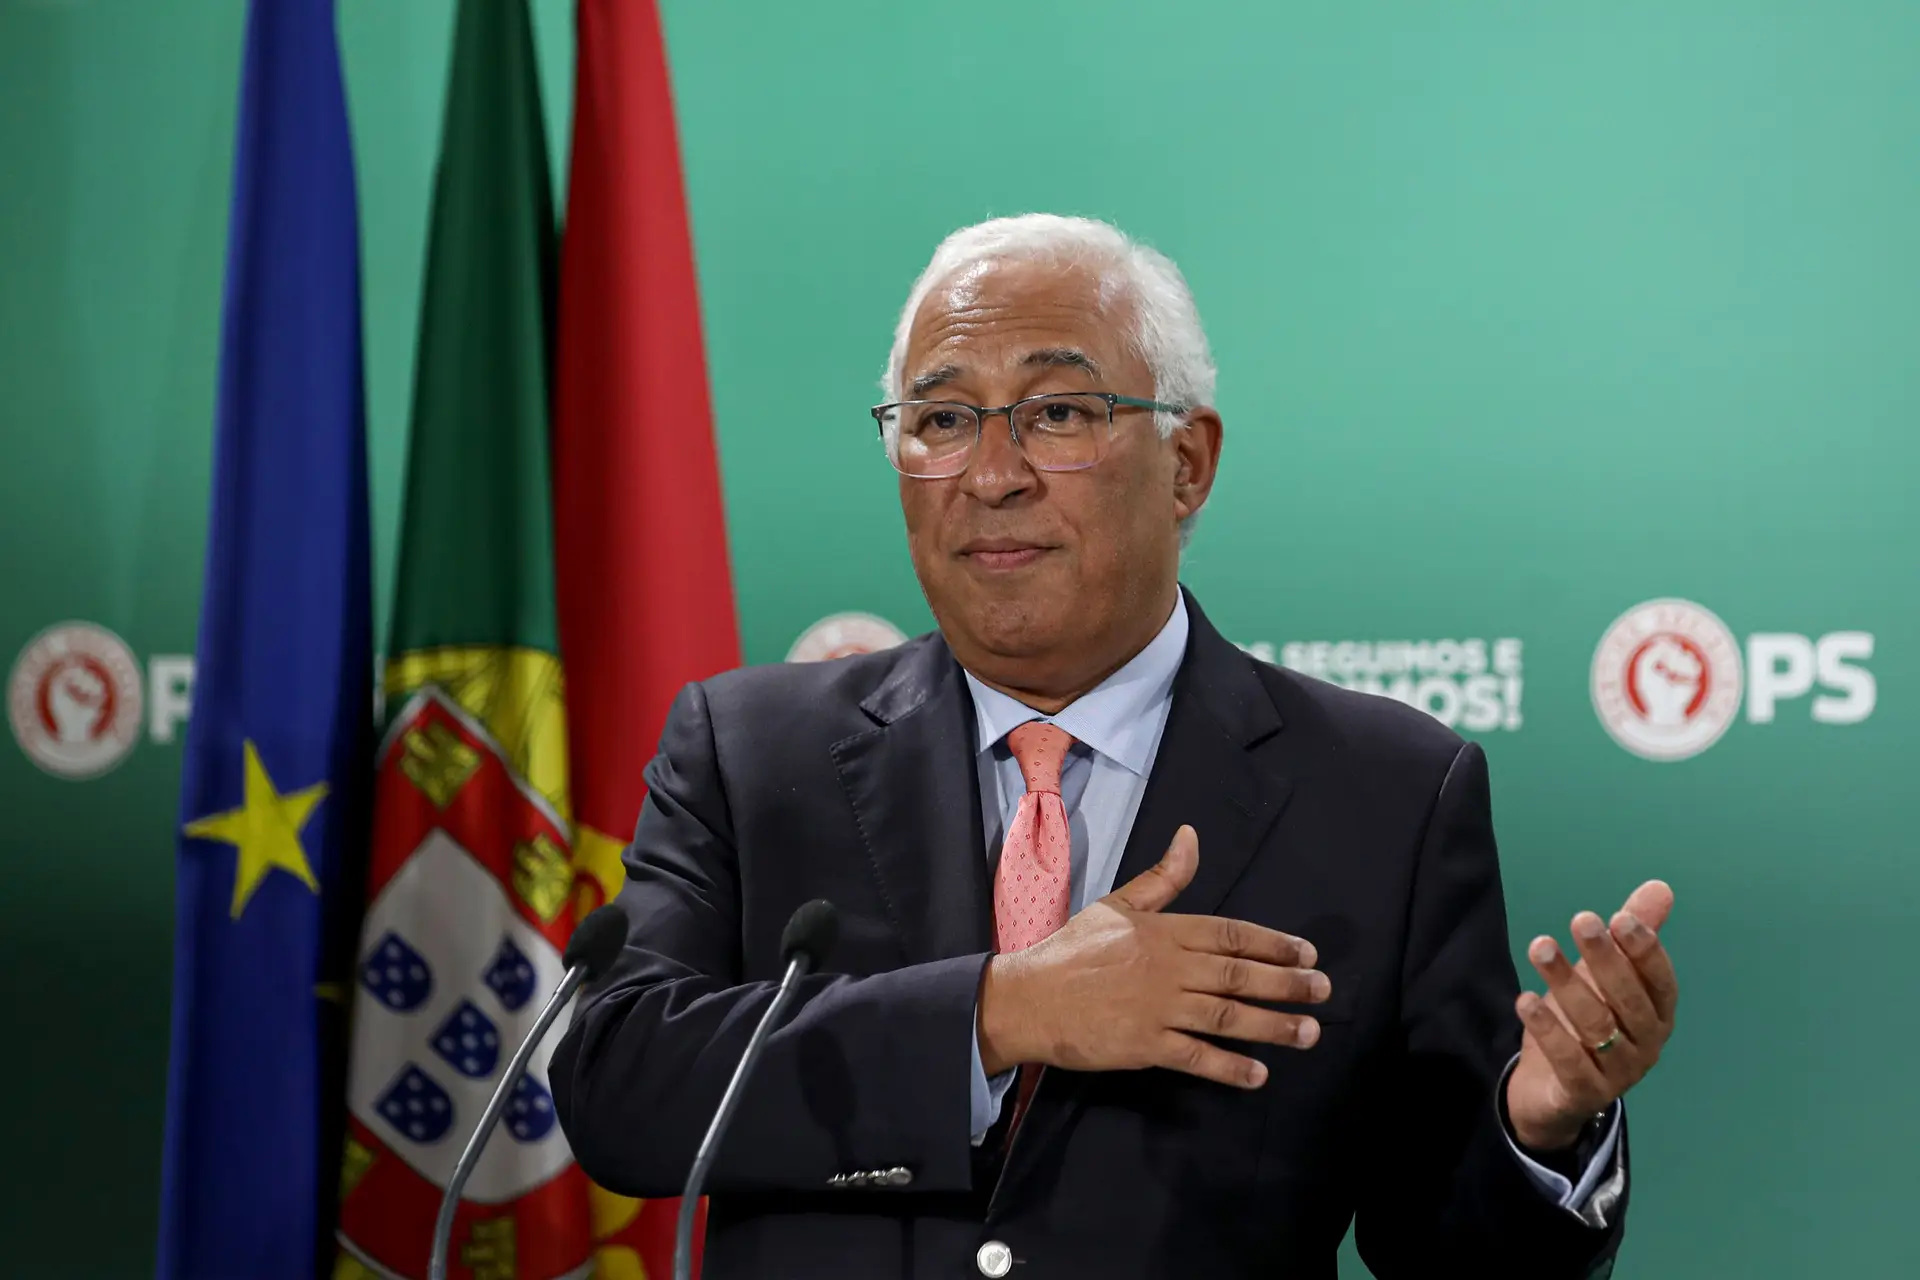 António Costa: “A missão [do PS] é manter nervos de aço” para vencer esta crise e cumprir a legislatura